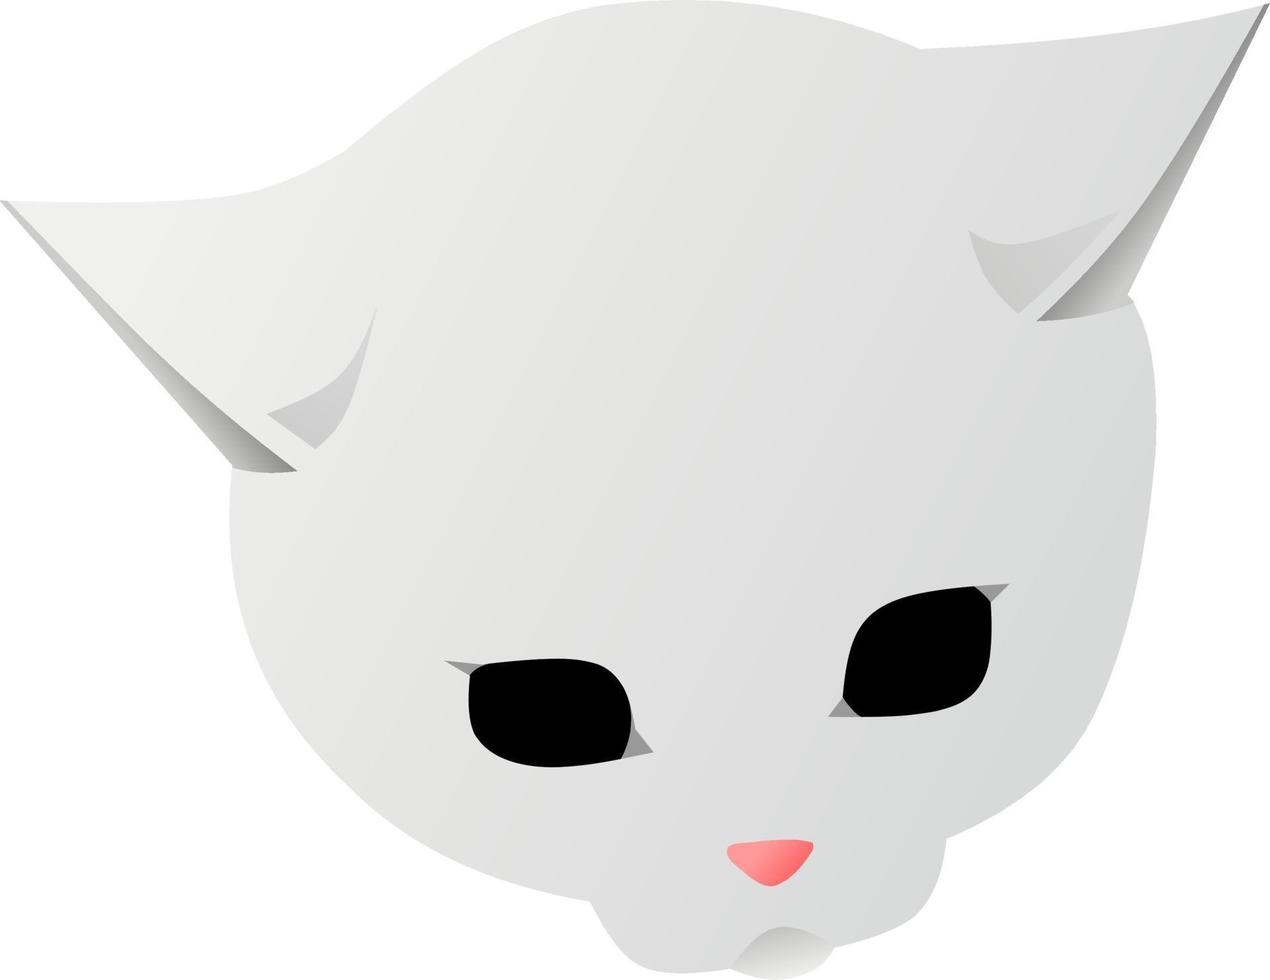 cabeça de gato clip art cartoon ilustração vetorial para logotipo, ícone, item, ideia, sinal, símbolo, decoração, mascote ou design. cabeça de gatinho vetor